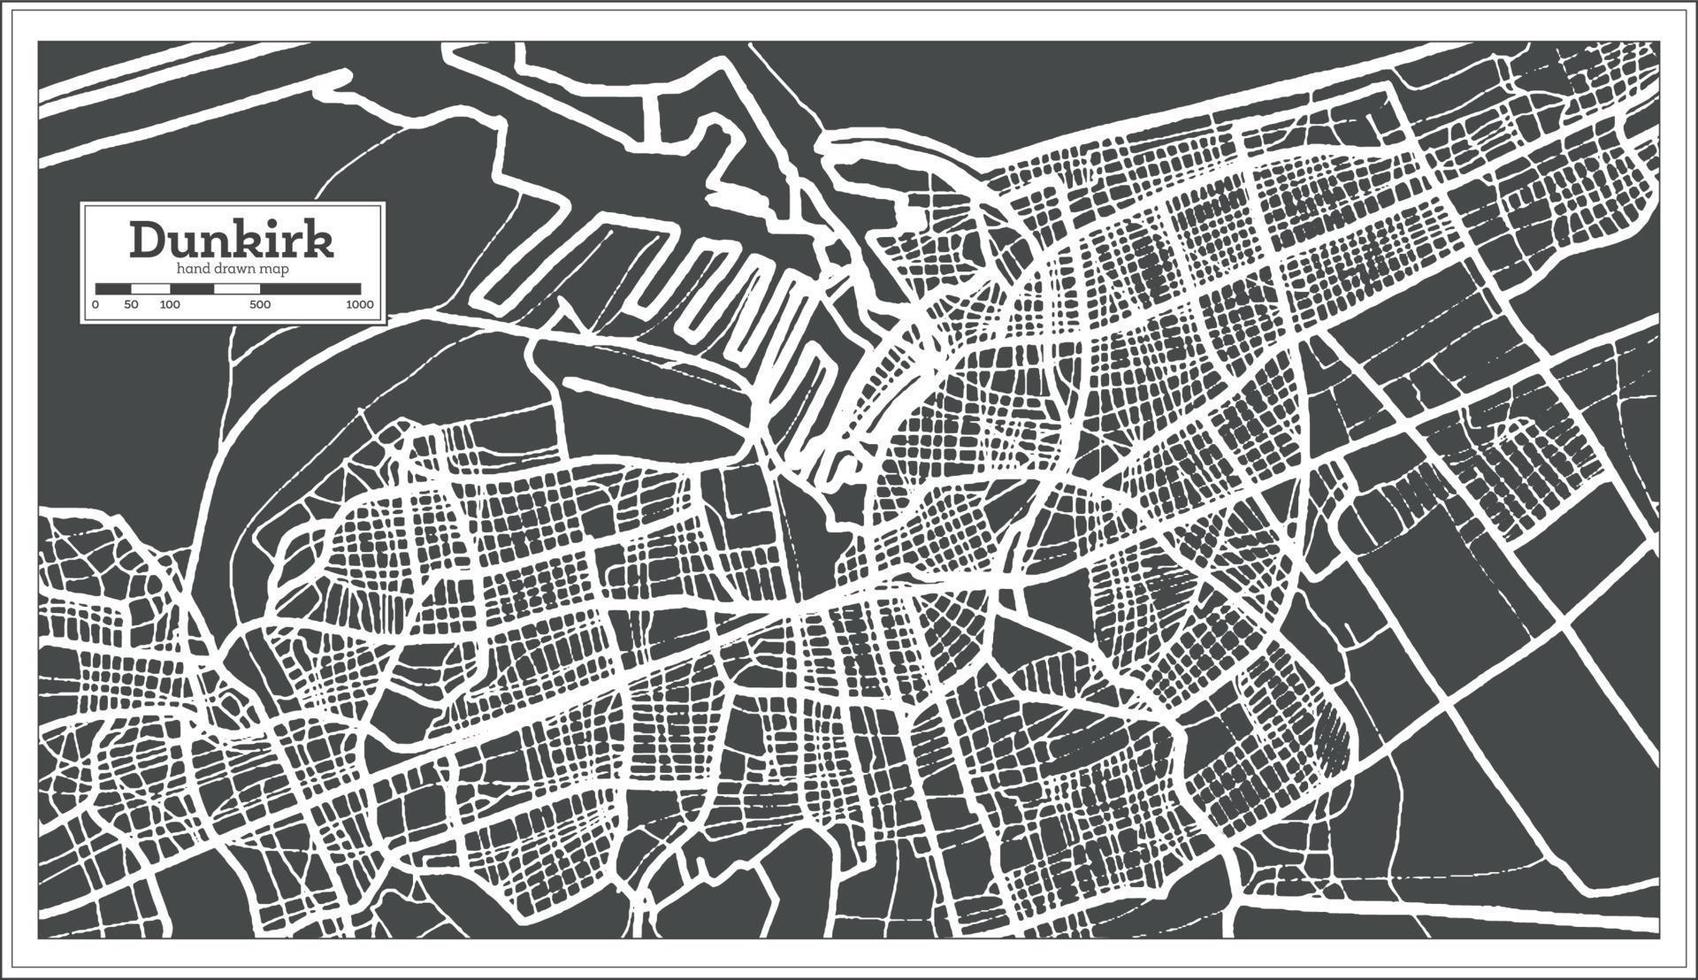 plan de la ville de dunkerque france dans un style rétro. carte muette. illustration vectorielle. vecteur